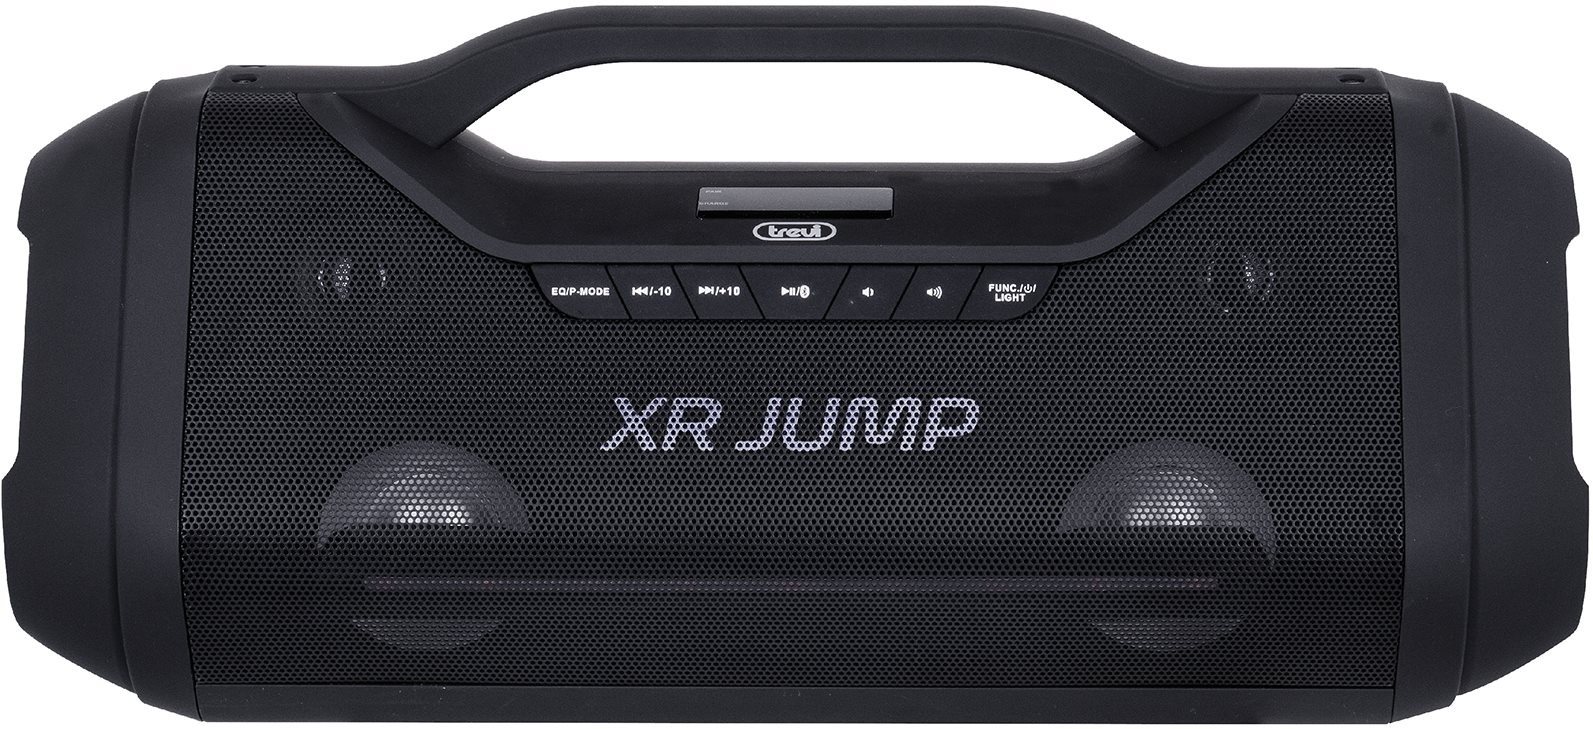 Bluetooth-Lautsprecher Trevi XR 400 Screen